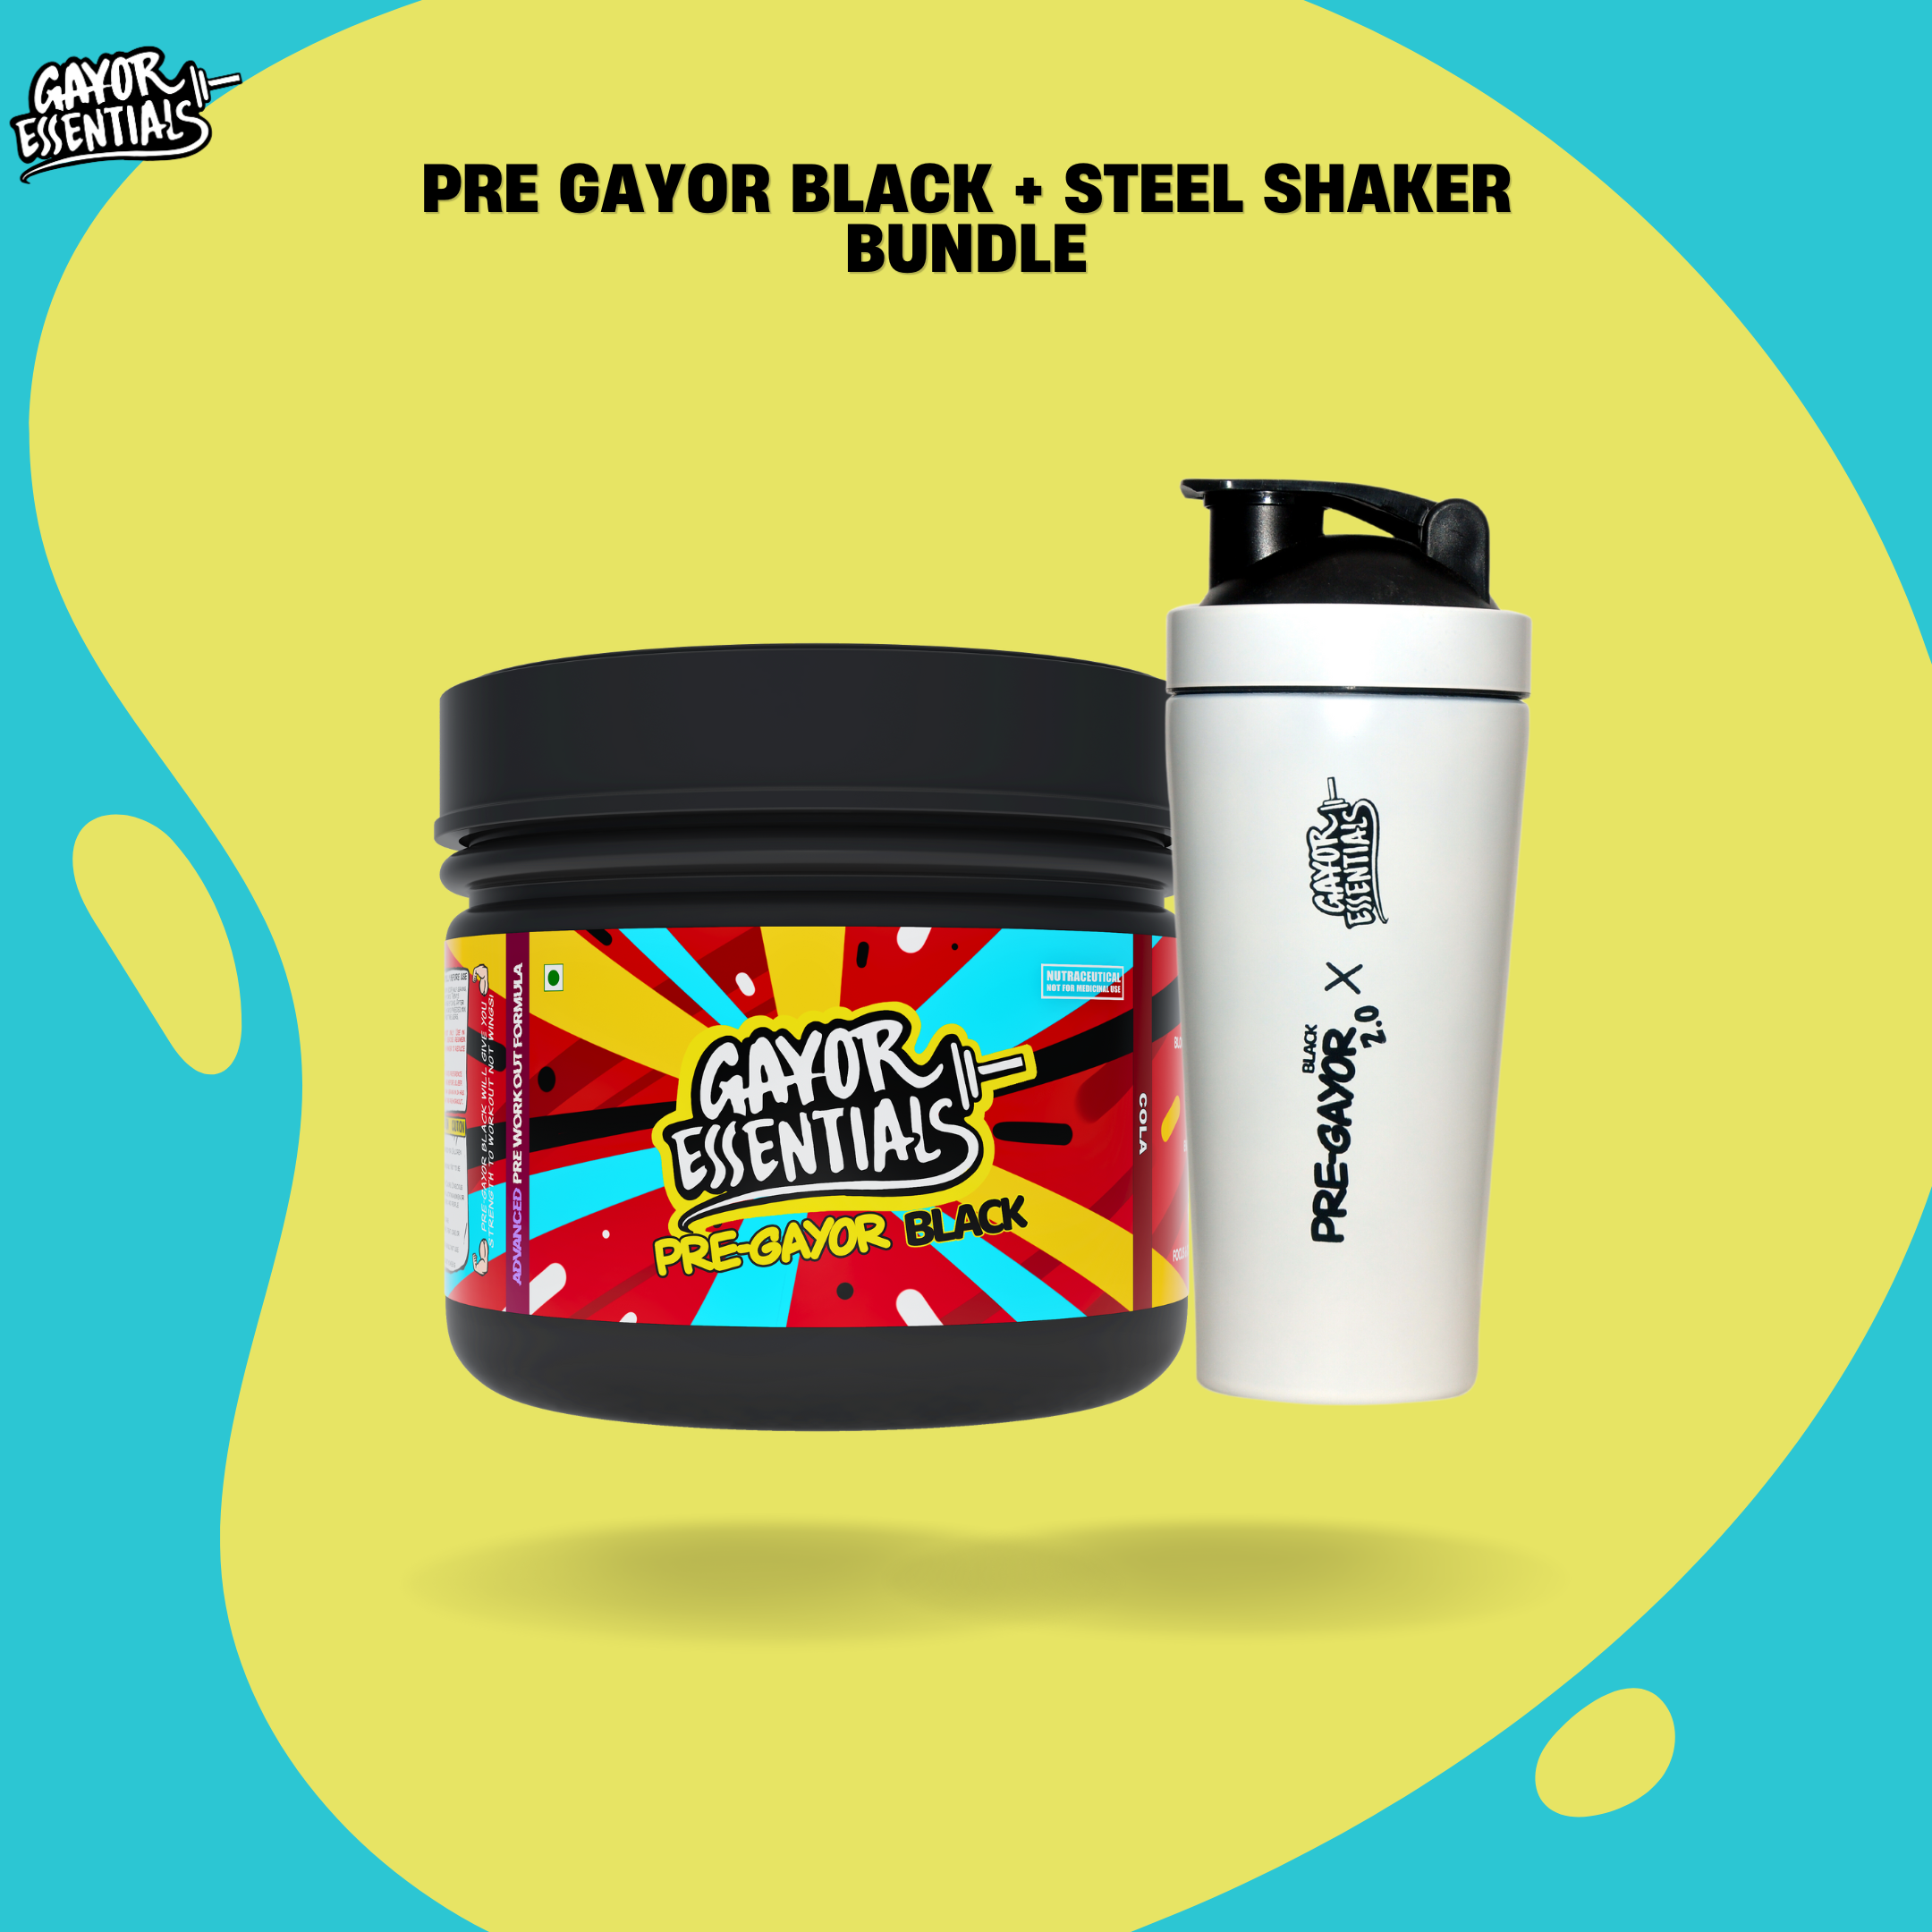 Pre Gayor Black + Steel Shaker Bundle